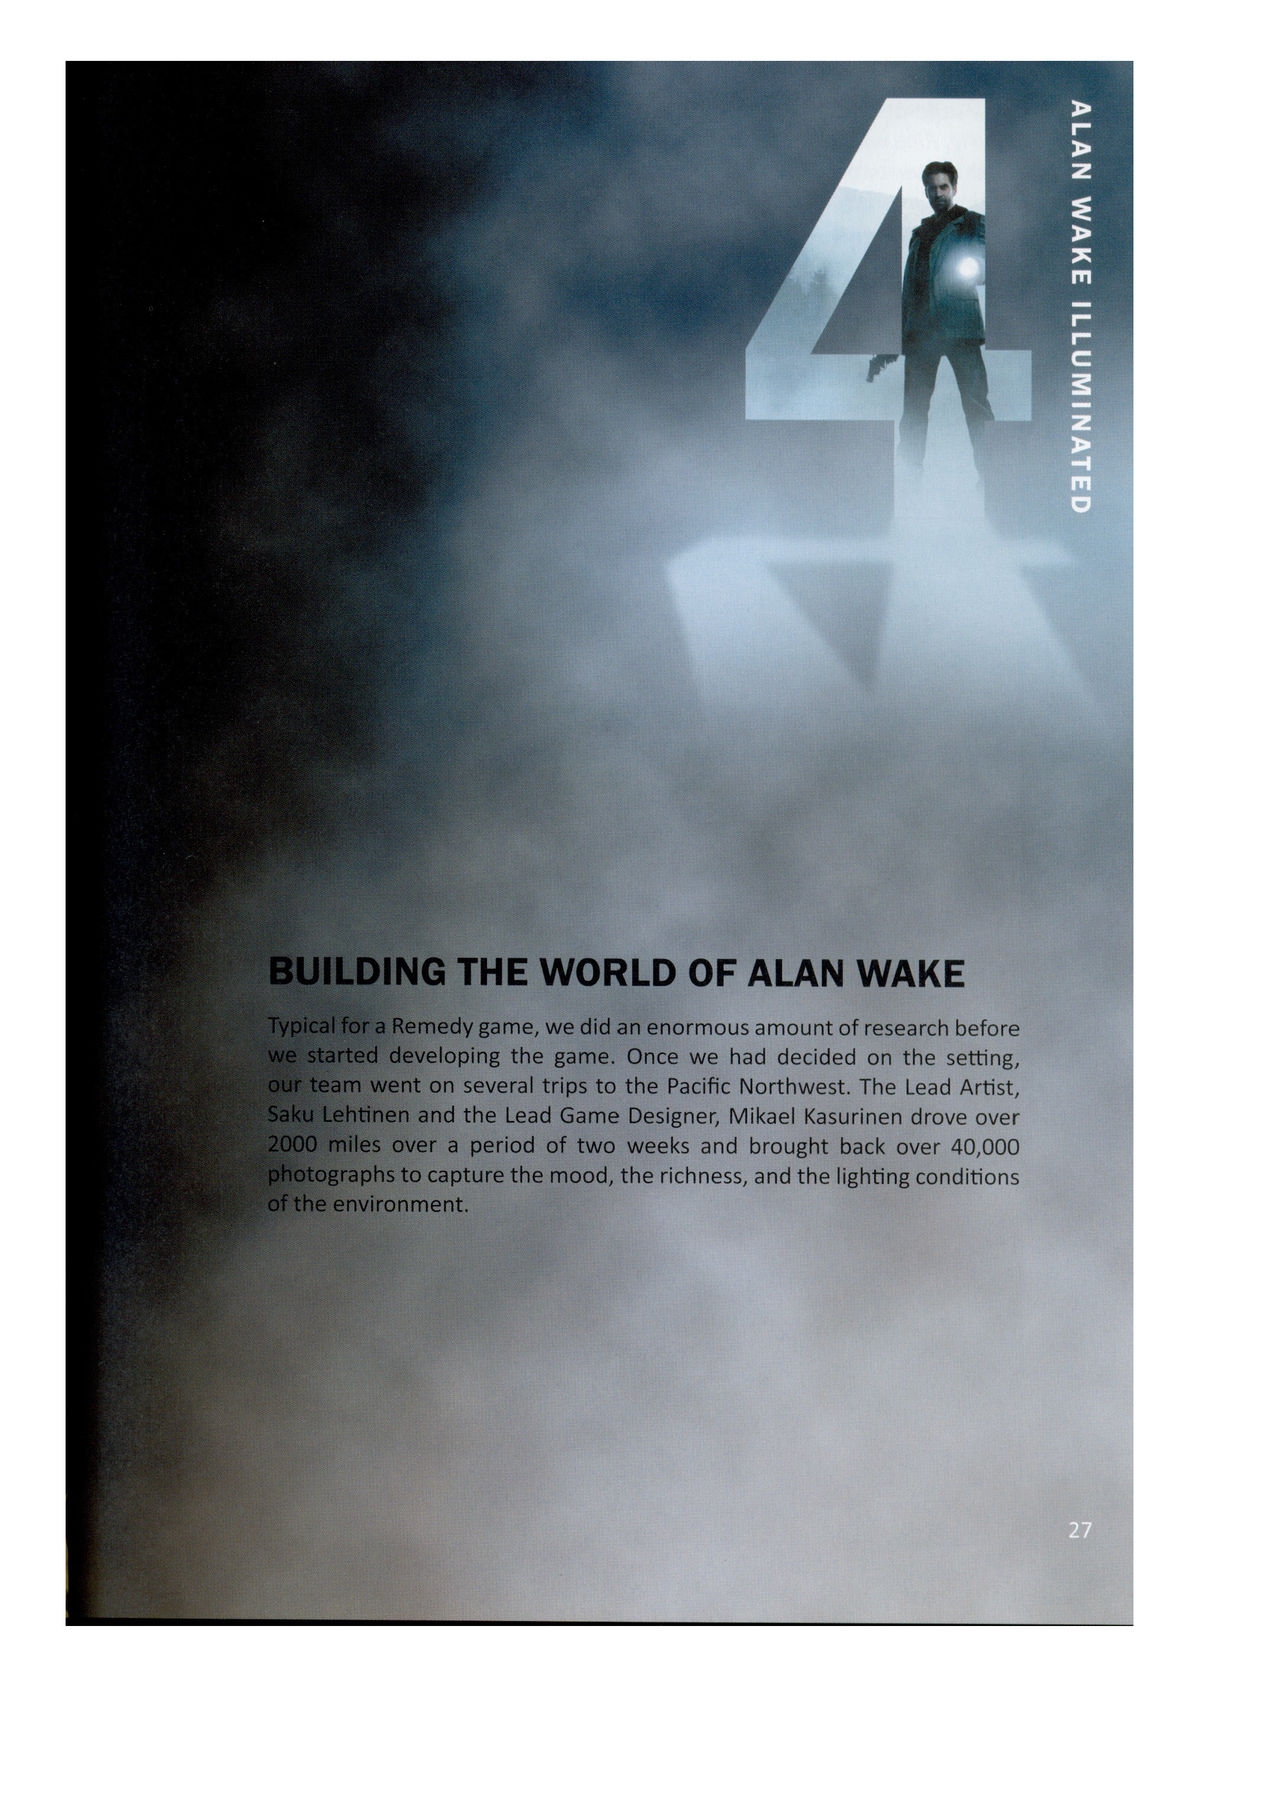 Alan Wake Illuminated 27